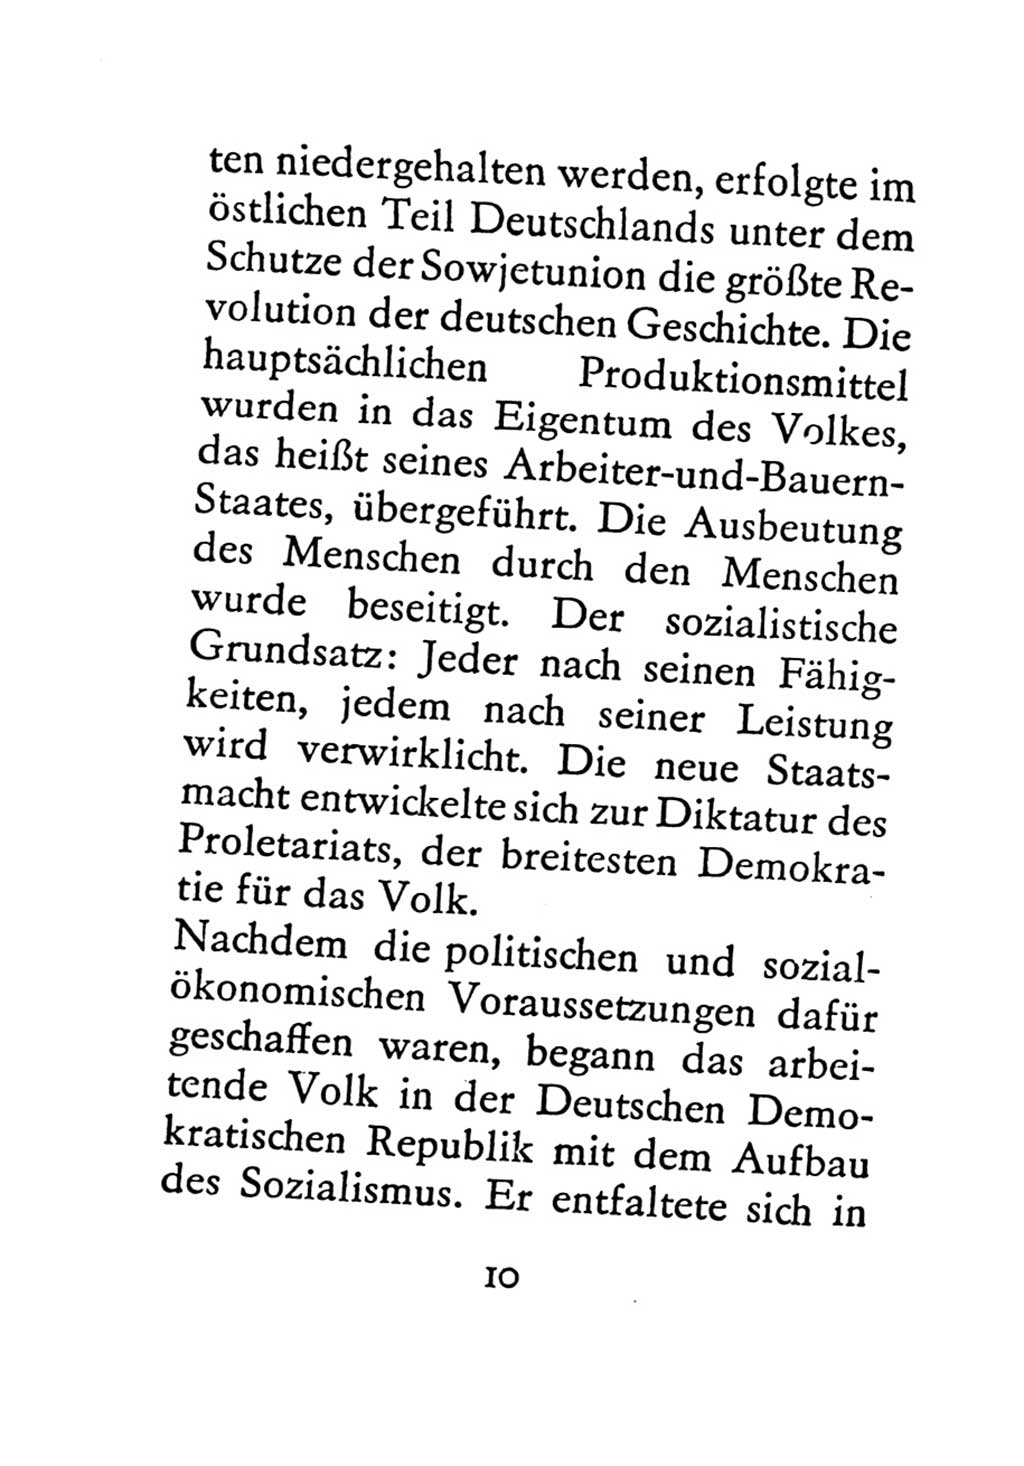 Statut der Sozialistischen Einheitspartei Deutschlands (SED) 1971, Seite 10 (St. SED DDR 1971, S. 10)